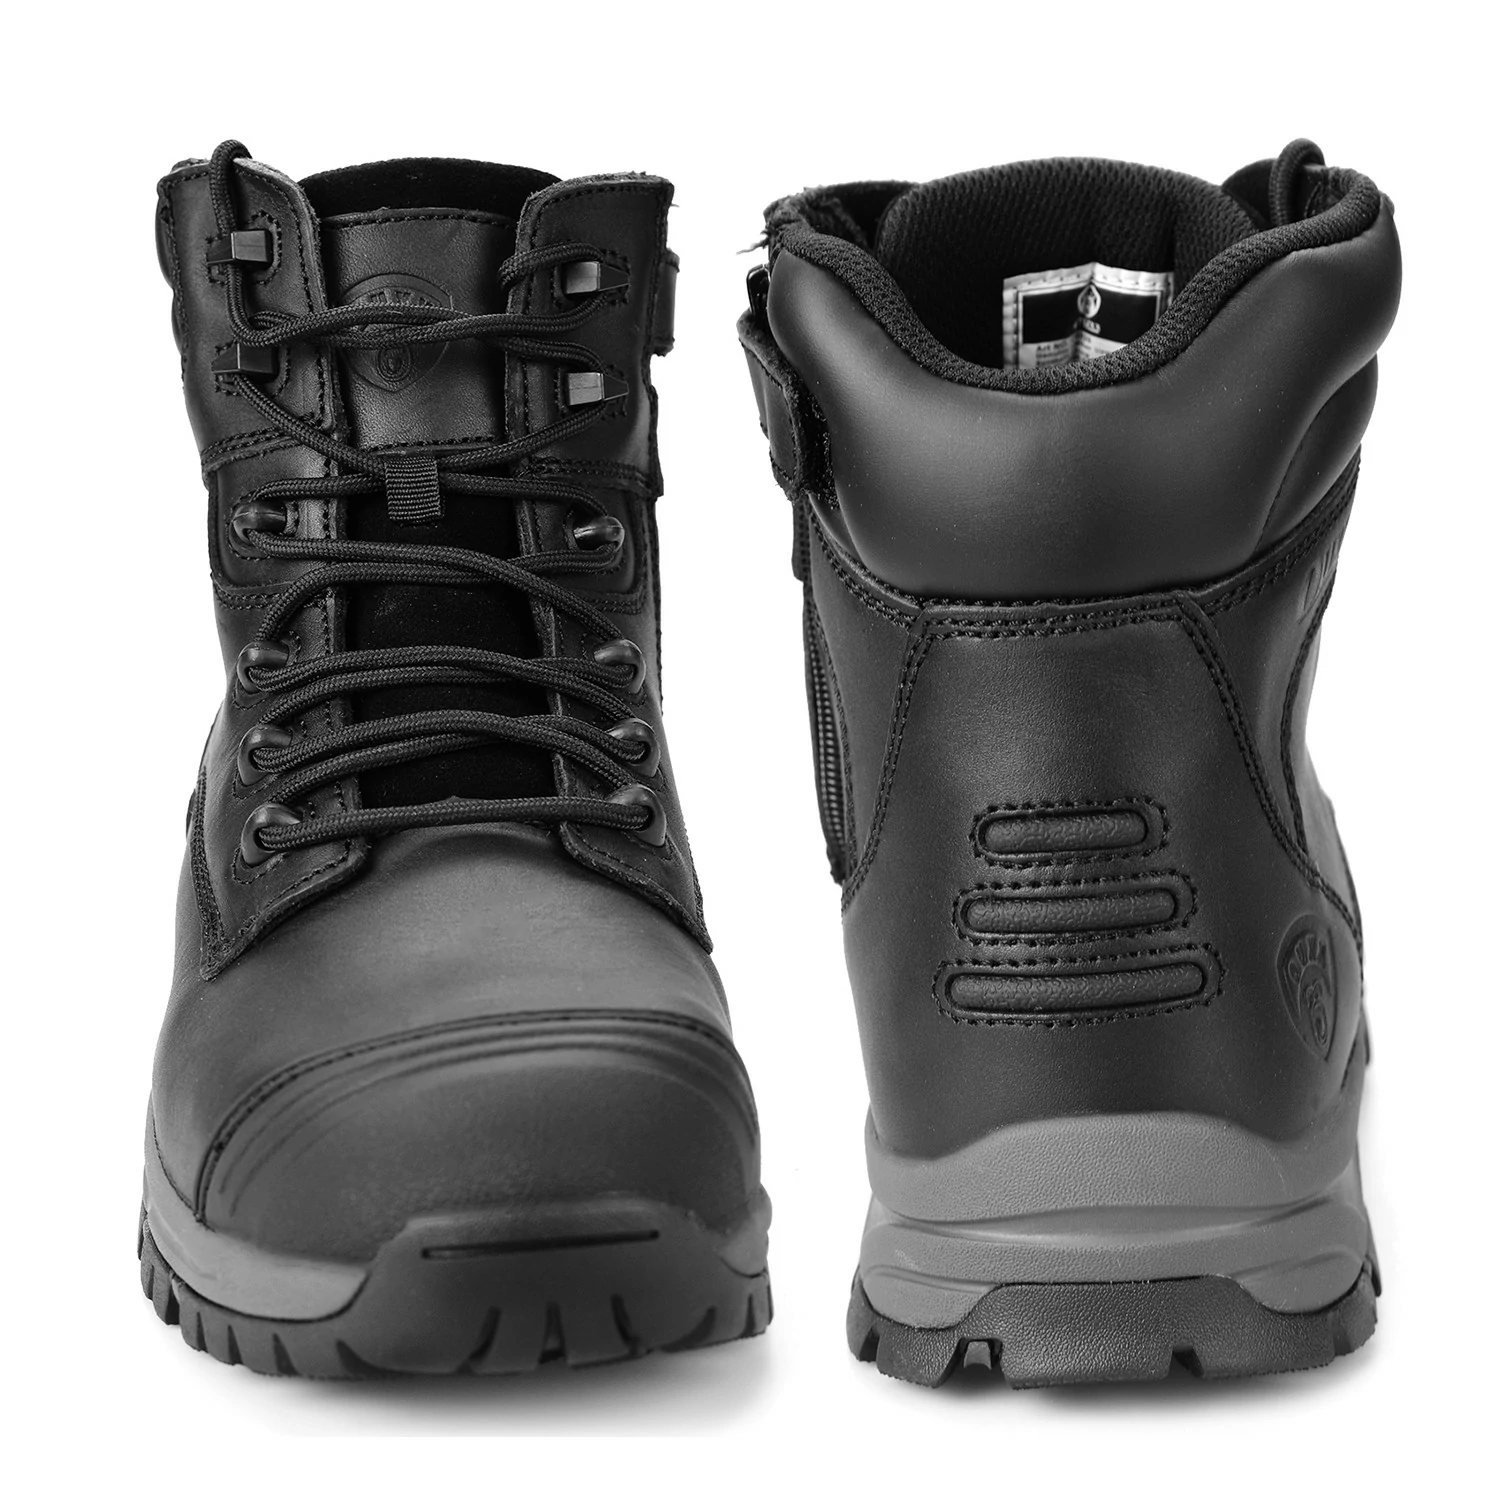 OX2720_www.ouxxsafety.com-4_Workboots_Workshoes_ouxxshoes_ouxxboots_non slip shoes_work boots for men